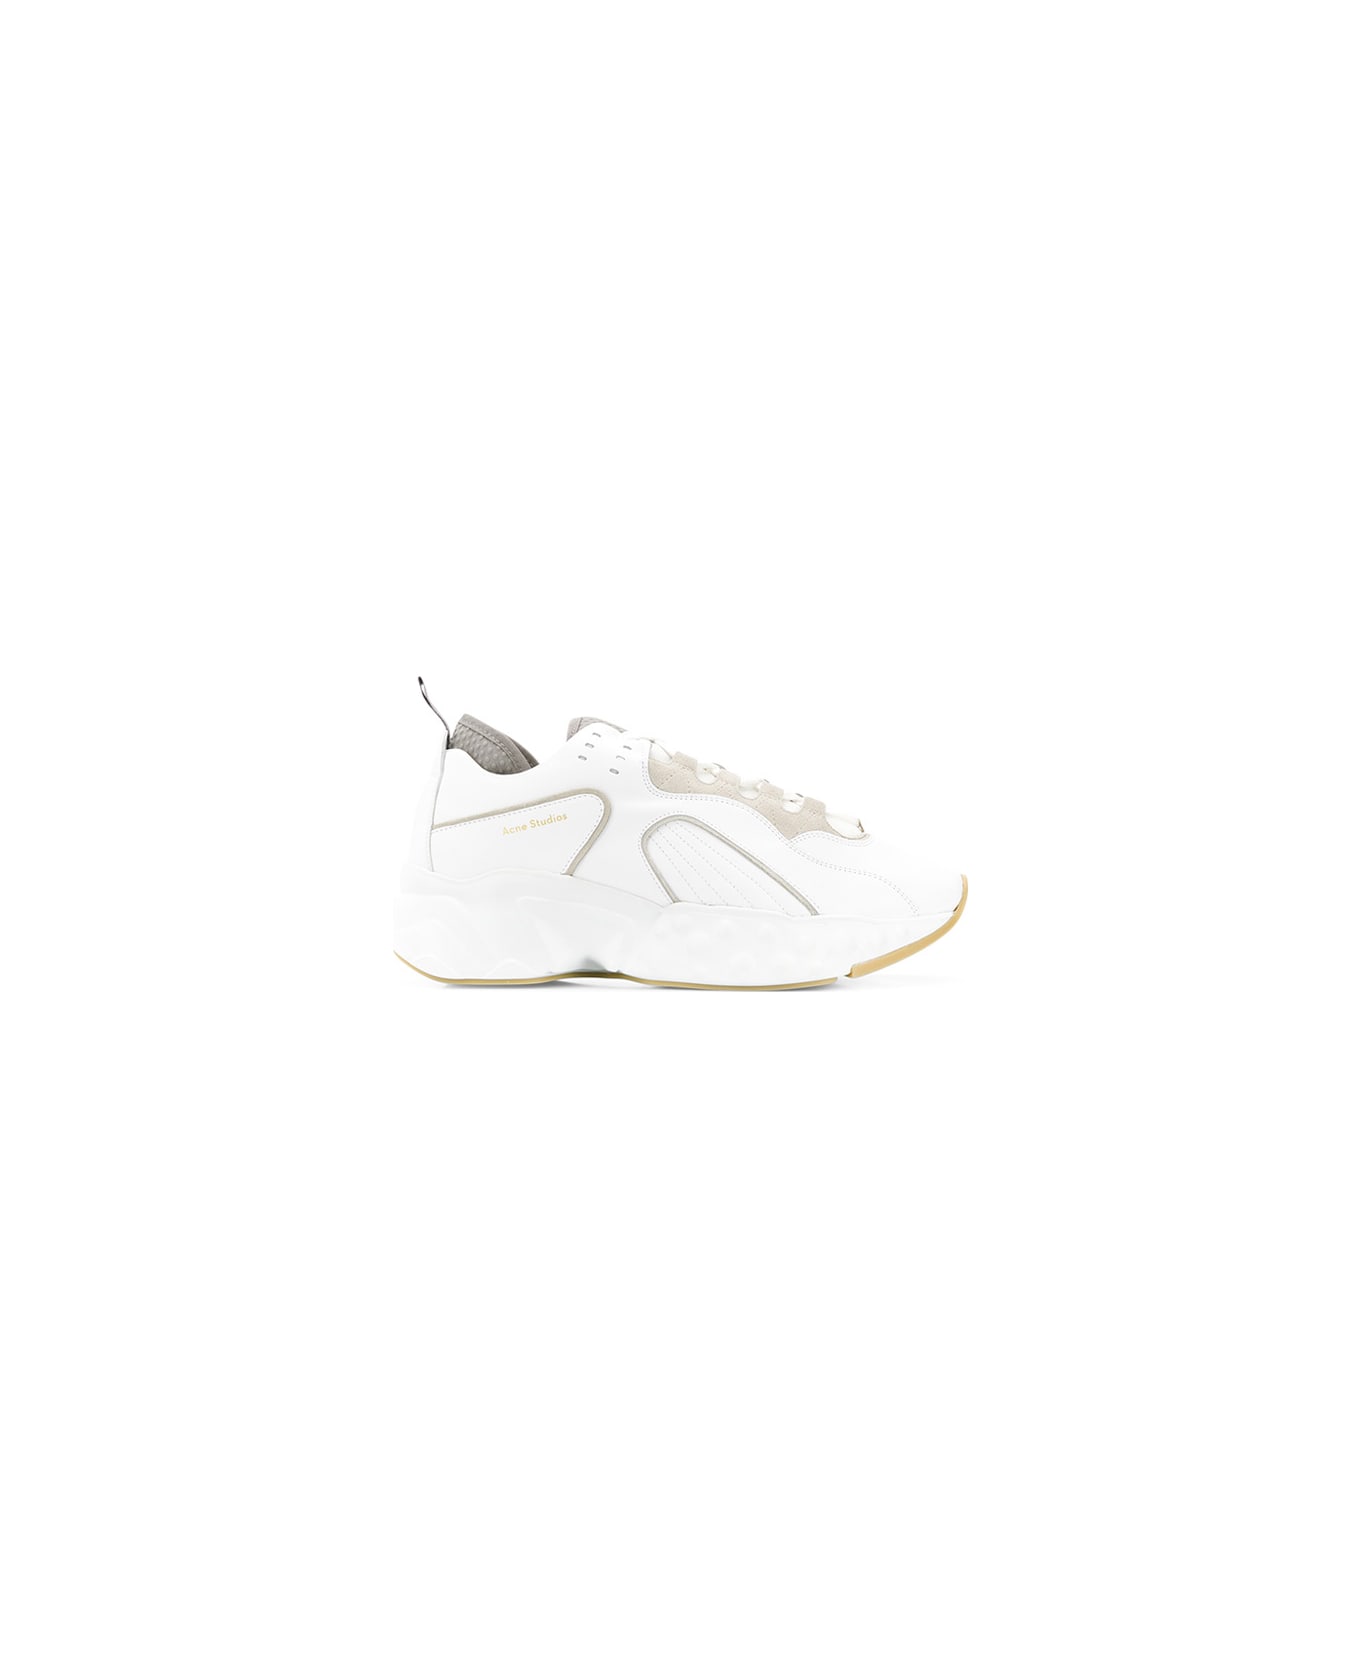 Acne Studios Rockaway Sneakers - White